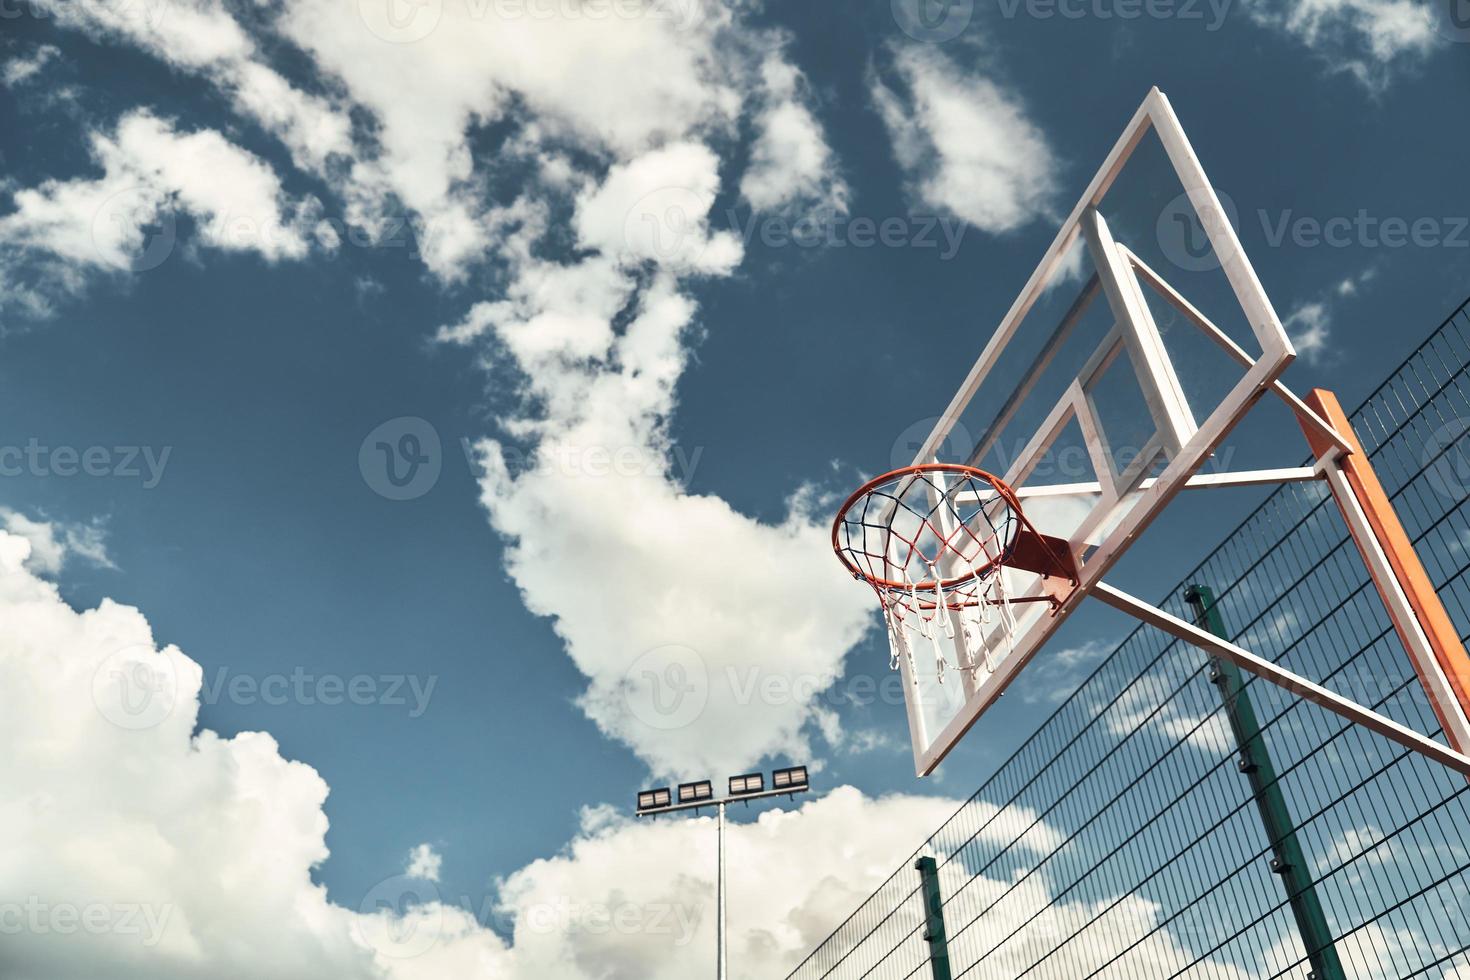 basquete ao ar livre. tiro de cesta de basquete com céu ao fundo ao ar livre foto